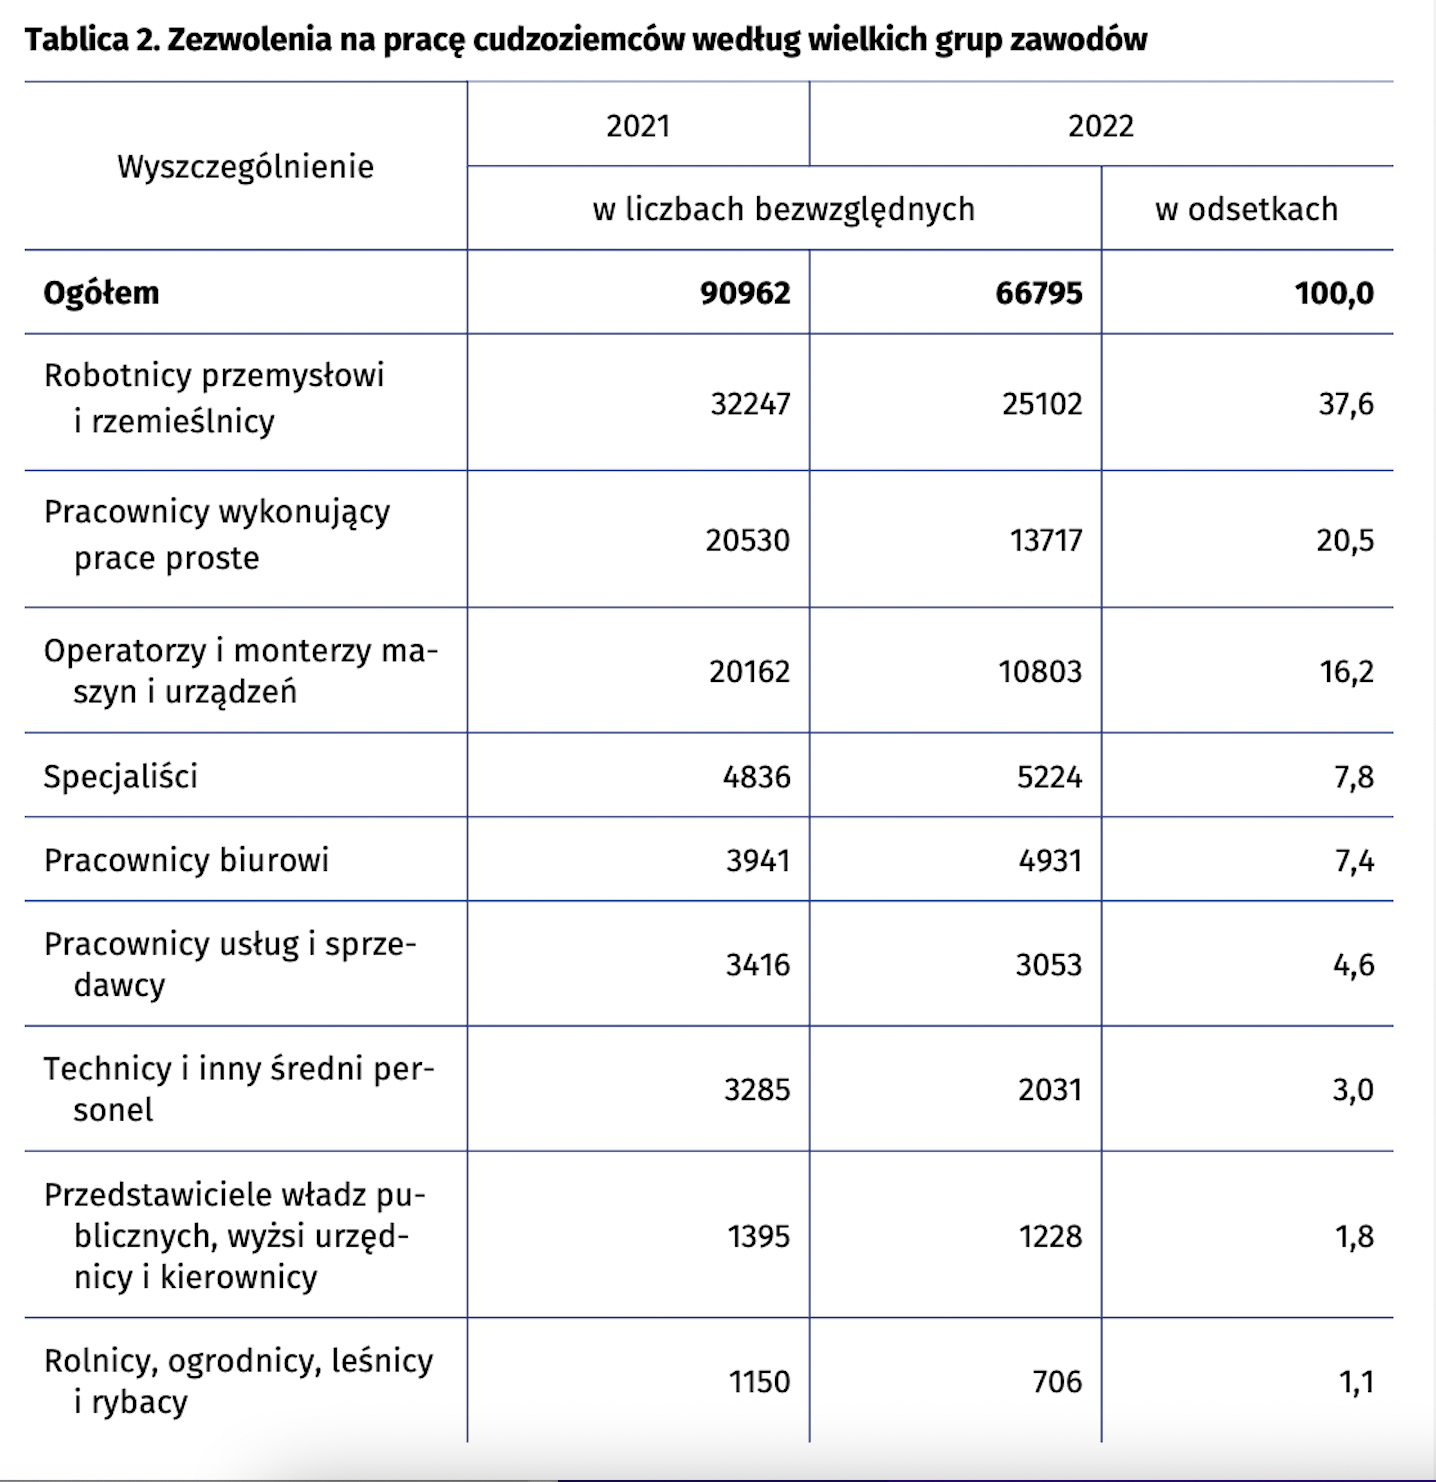 Zezwolenia na pracę cudzoziemców na Mazowszu według wielkich grup zawodów w 2022 r. (Źródło: dane GUS).